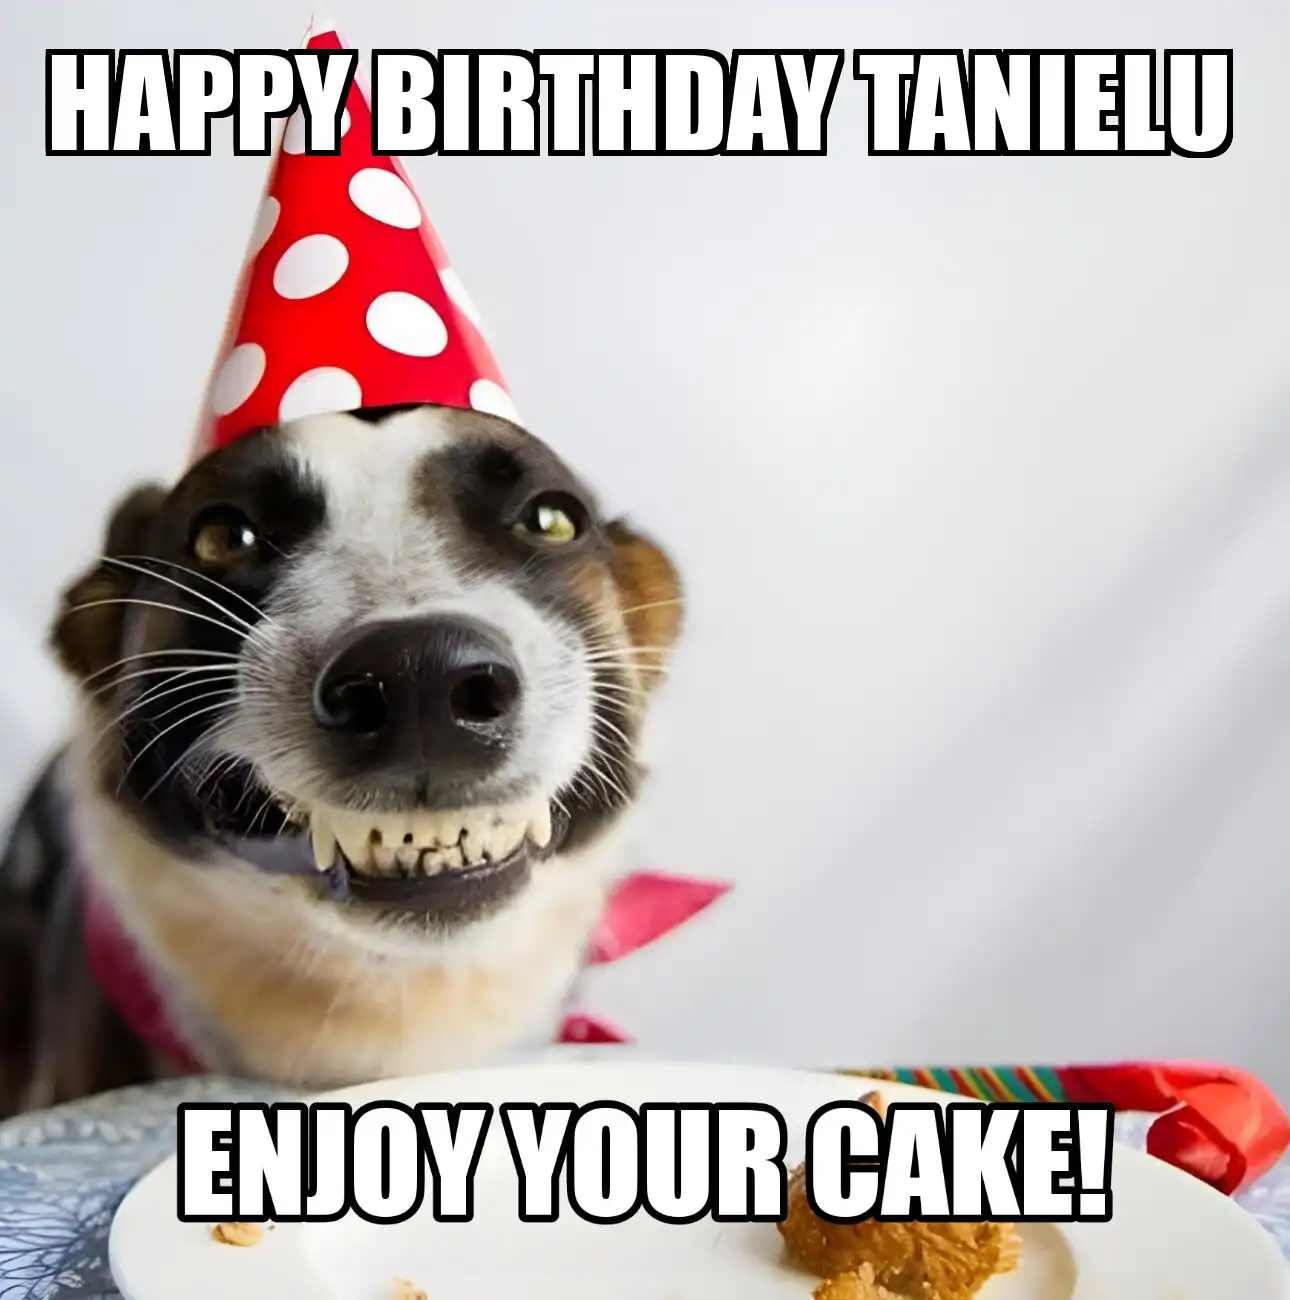 Happy Birthday Tanielu Enjoy Your Cake Dog Meme